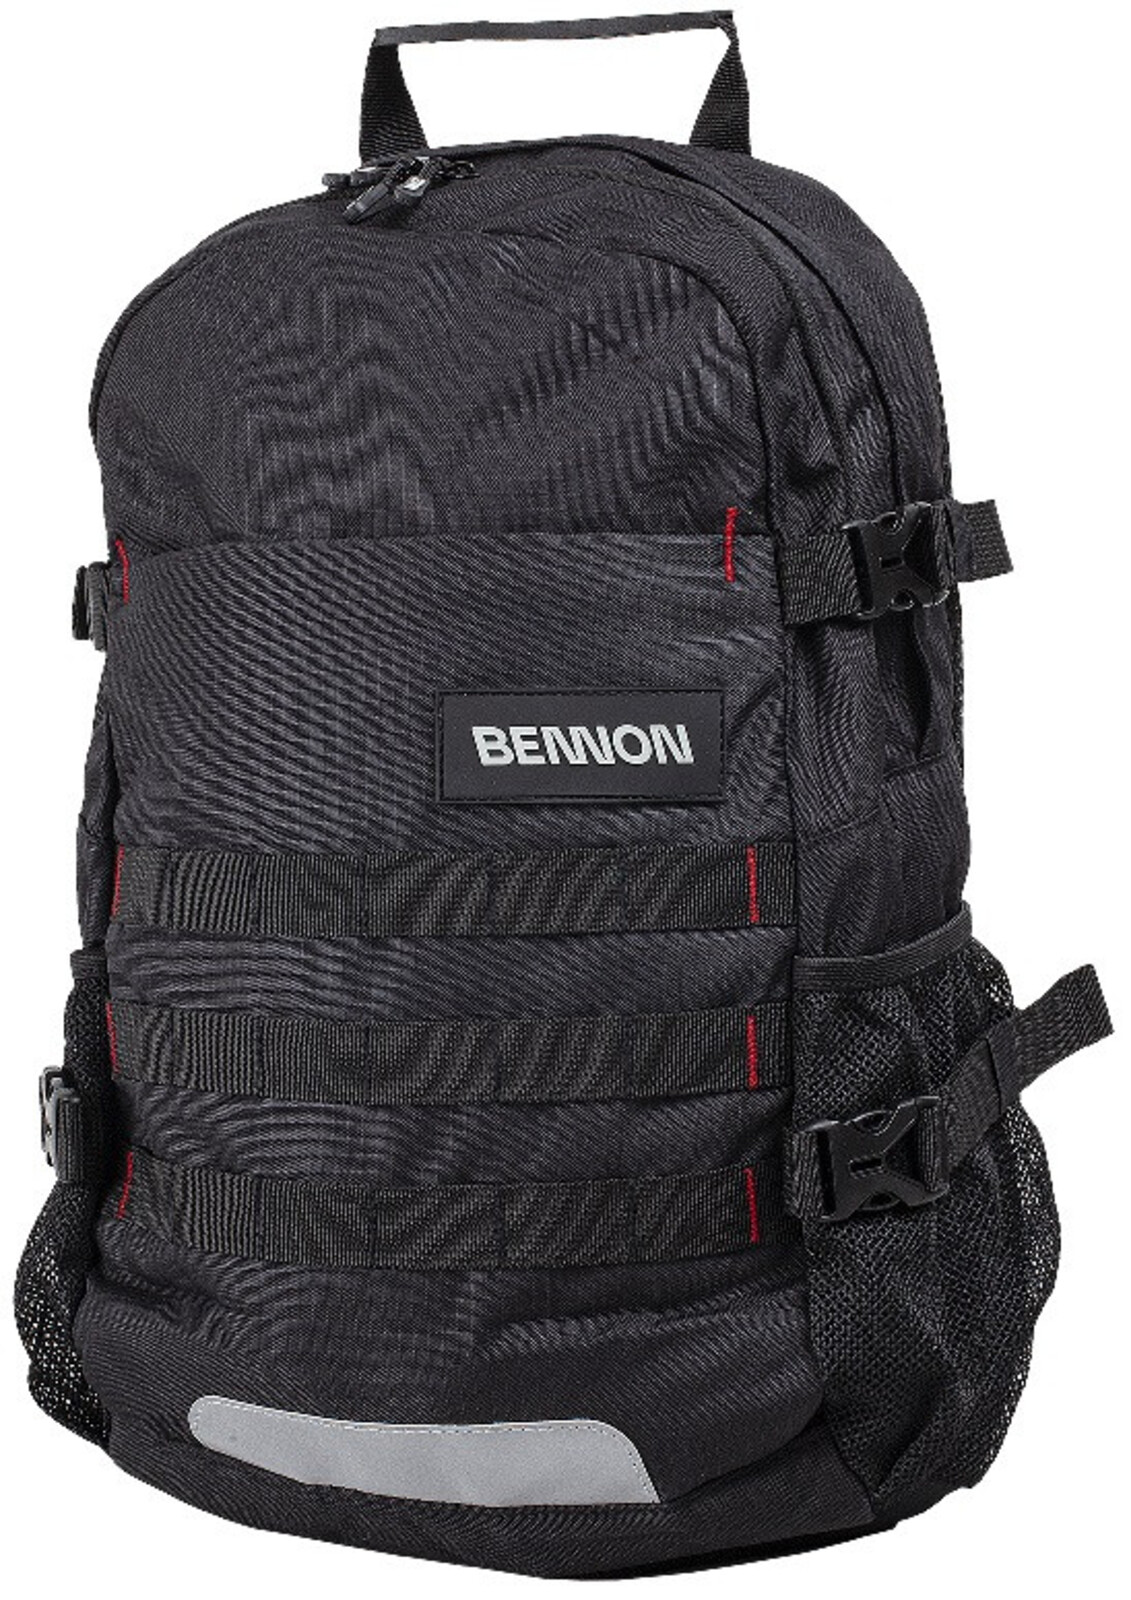 Odolný batoh Bennon Daimon 35 l - veľkosť: 35 L, farba: čierna